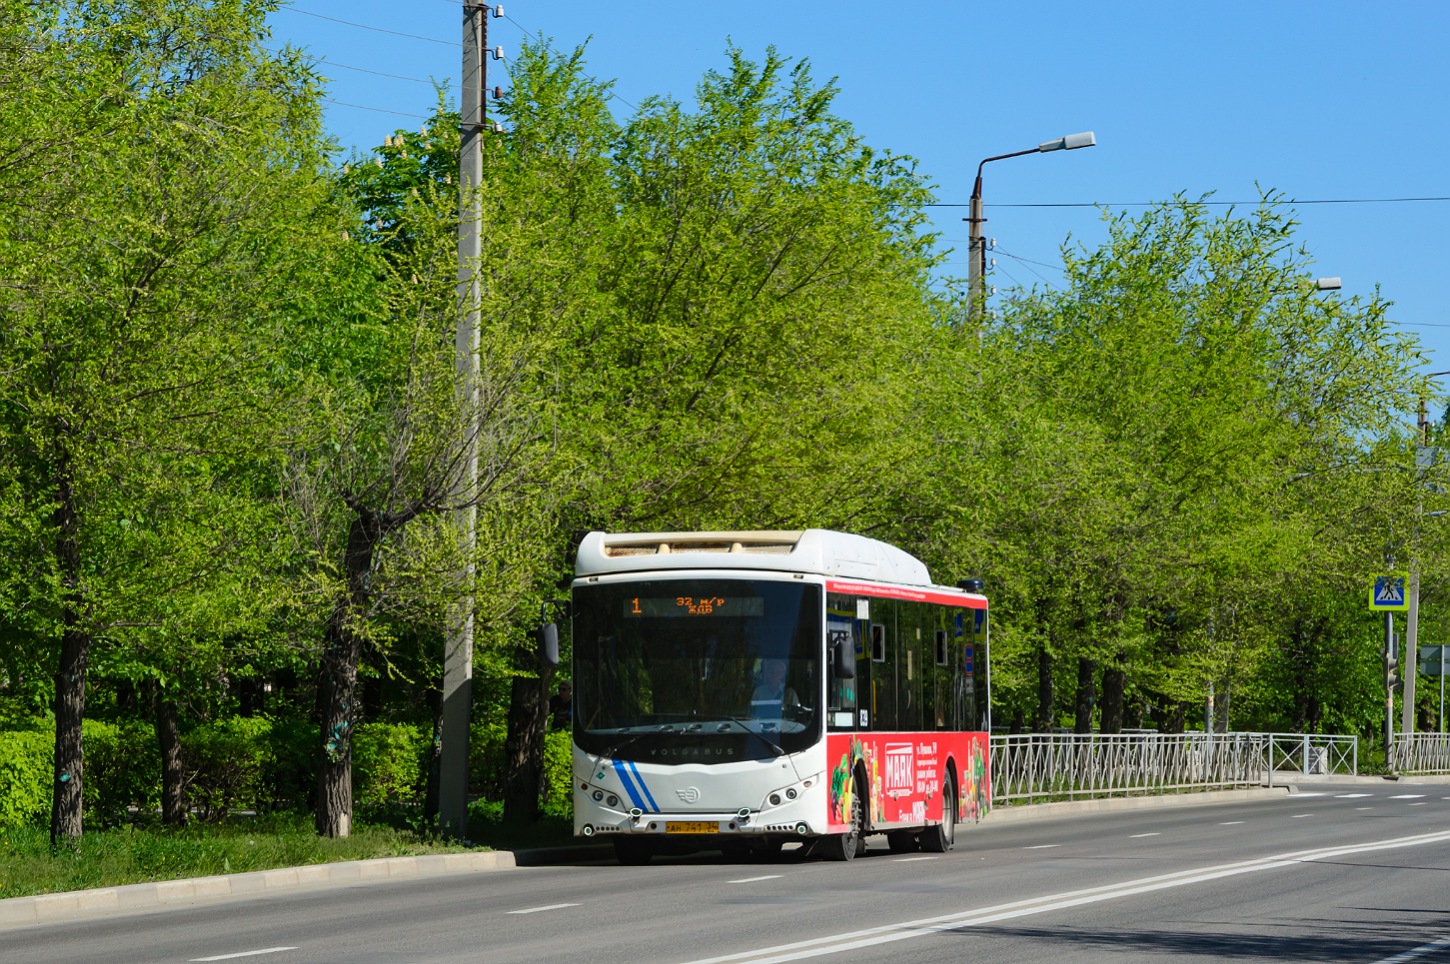 Волгоградская область, Volgabus-5270.GH № 839